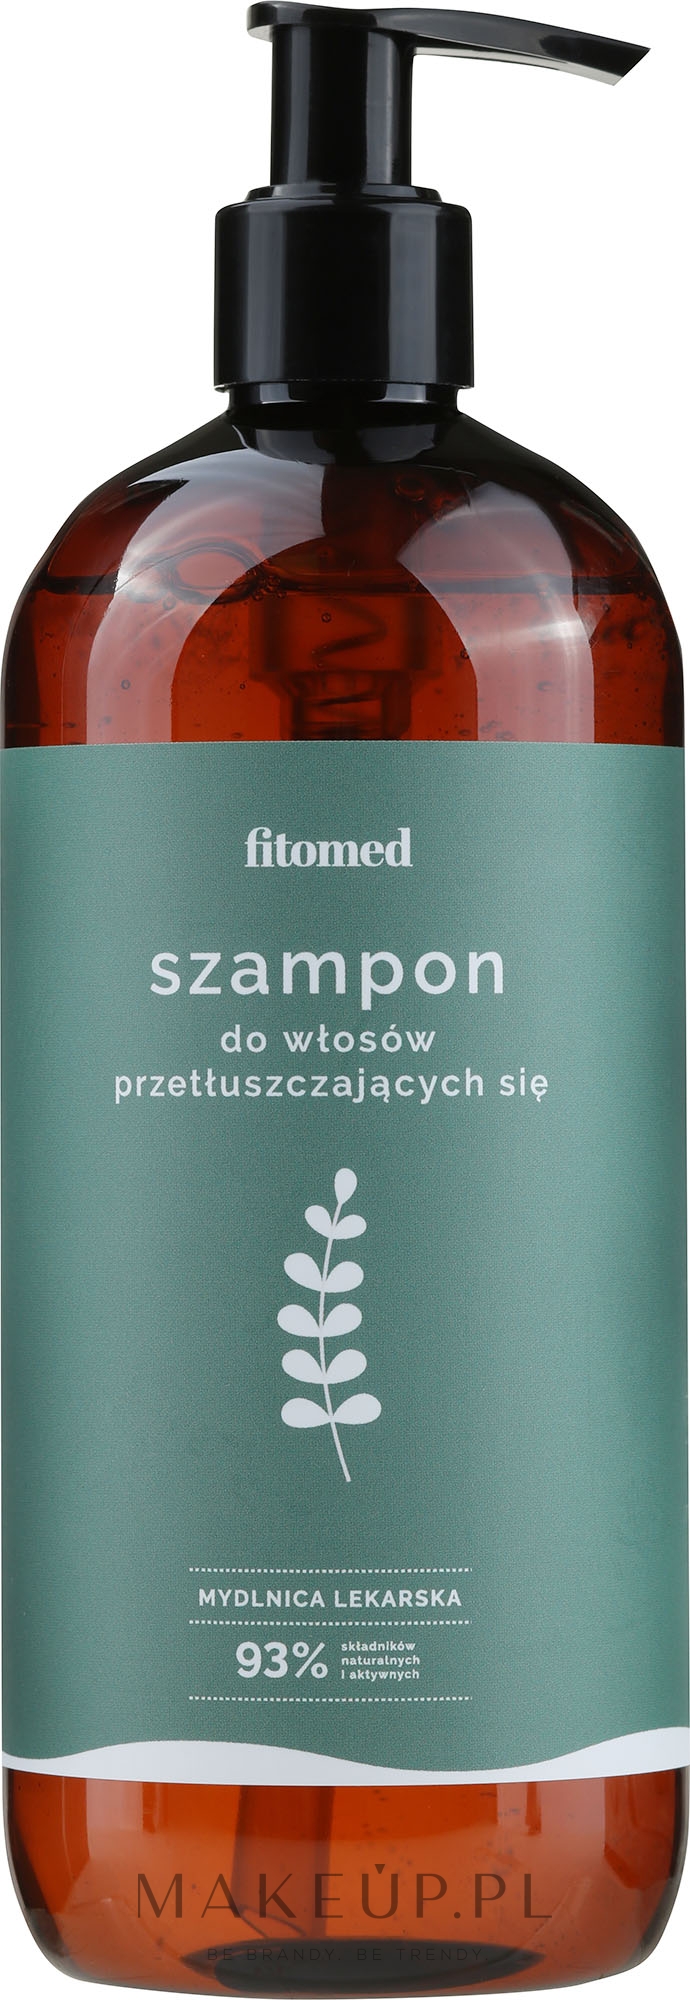 szampon ziolowy wizaz